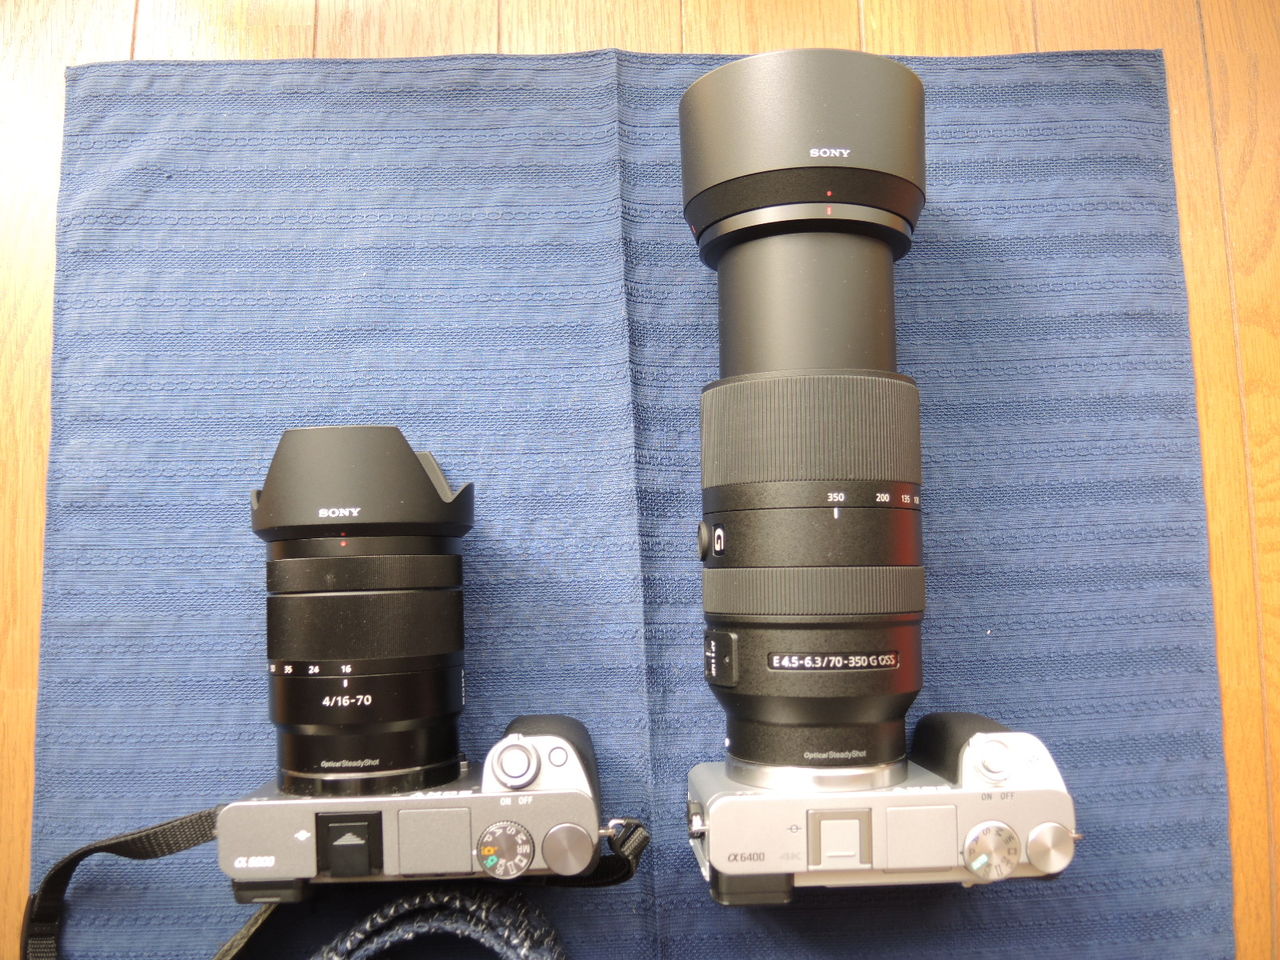 SONYミラーレス一眼カメラα6400＋望遠レンズSEL70350G（70-350mm F4.5-6.3）購入記 : 男ひとり旅の美学